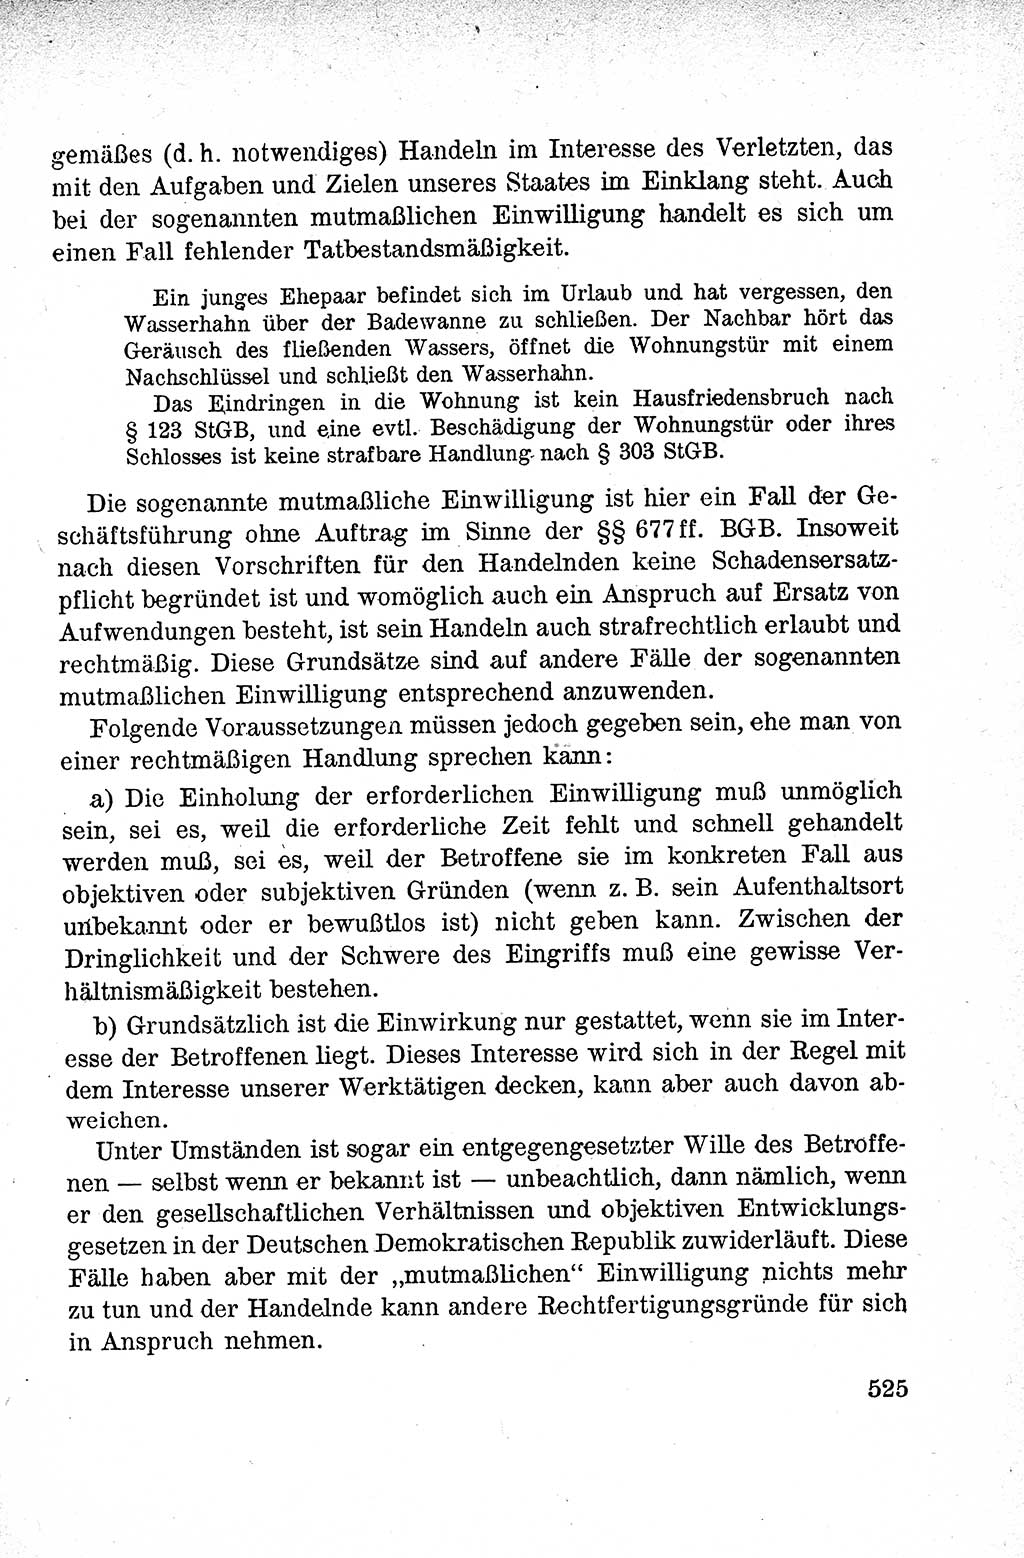 Lehrbuch des Strafrechts der Deutschen Demokratischen Republik (DDR), Allgemeiner Teil 1959, Seite 525 (Lb. Strafr. DDR AT 1959, S. 525)